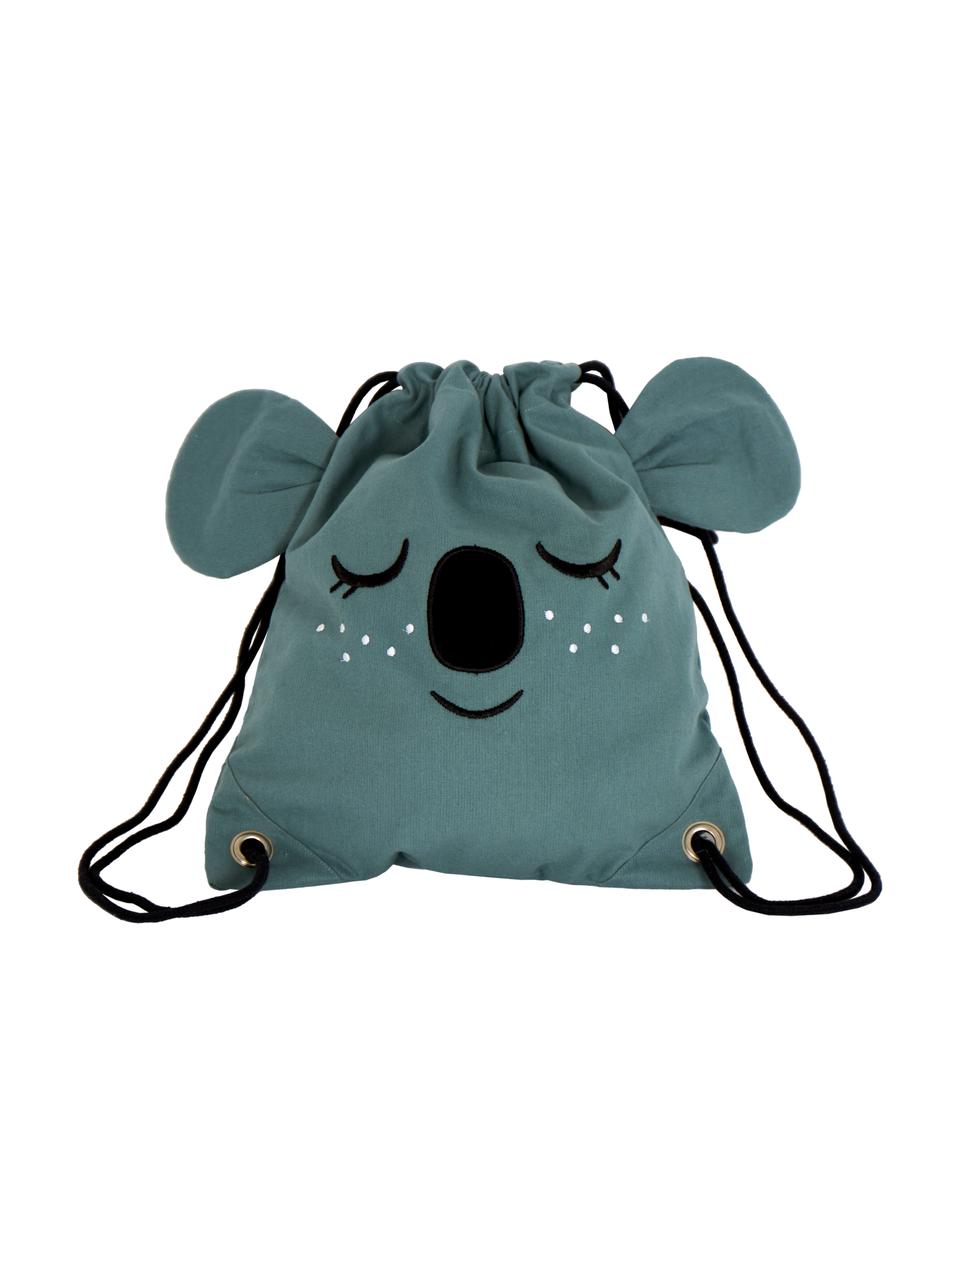 Plecak dla dzieci Koala, 100% bawełna organiczna z certyfikatem GOTS, Niebieskoszary, S 30 x W 35 cm